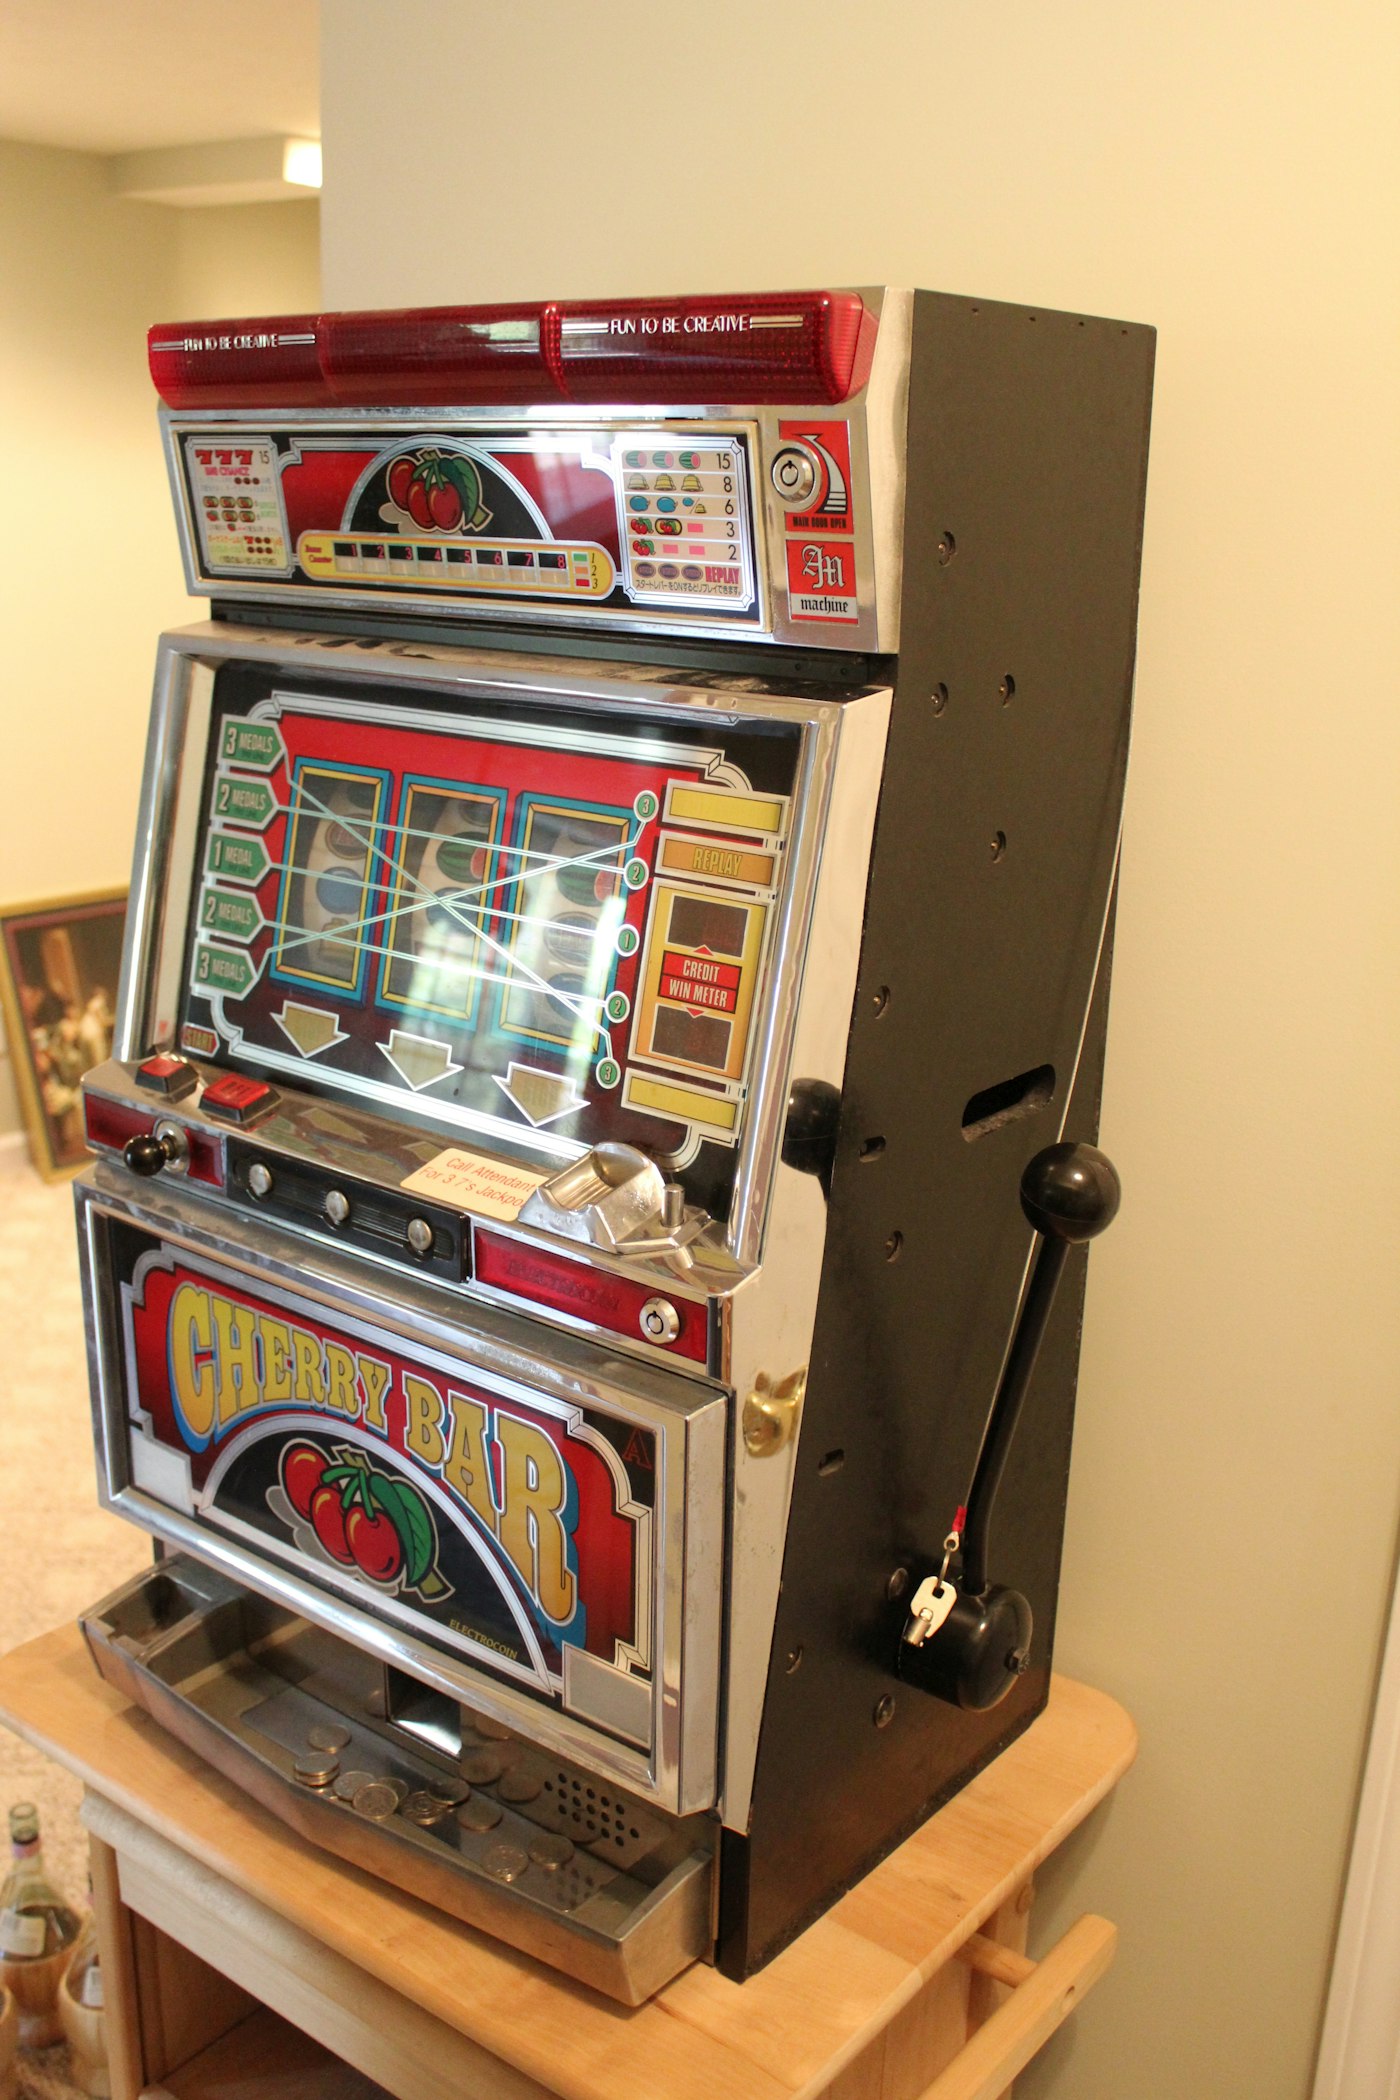 Cherry Bar Slot Machine